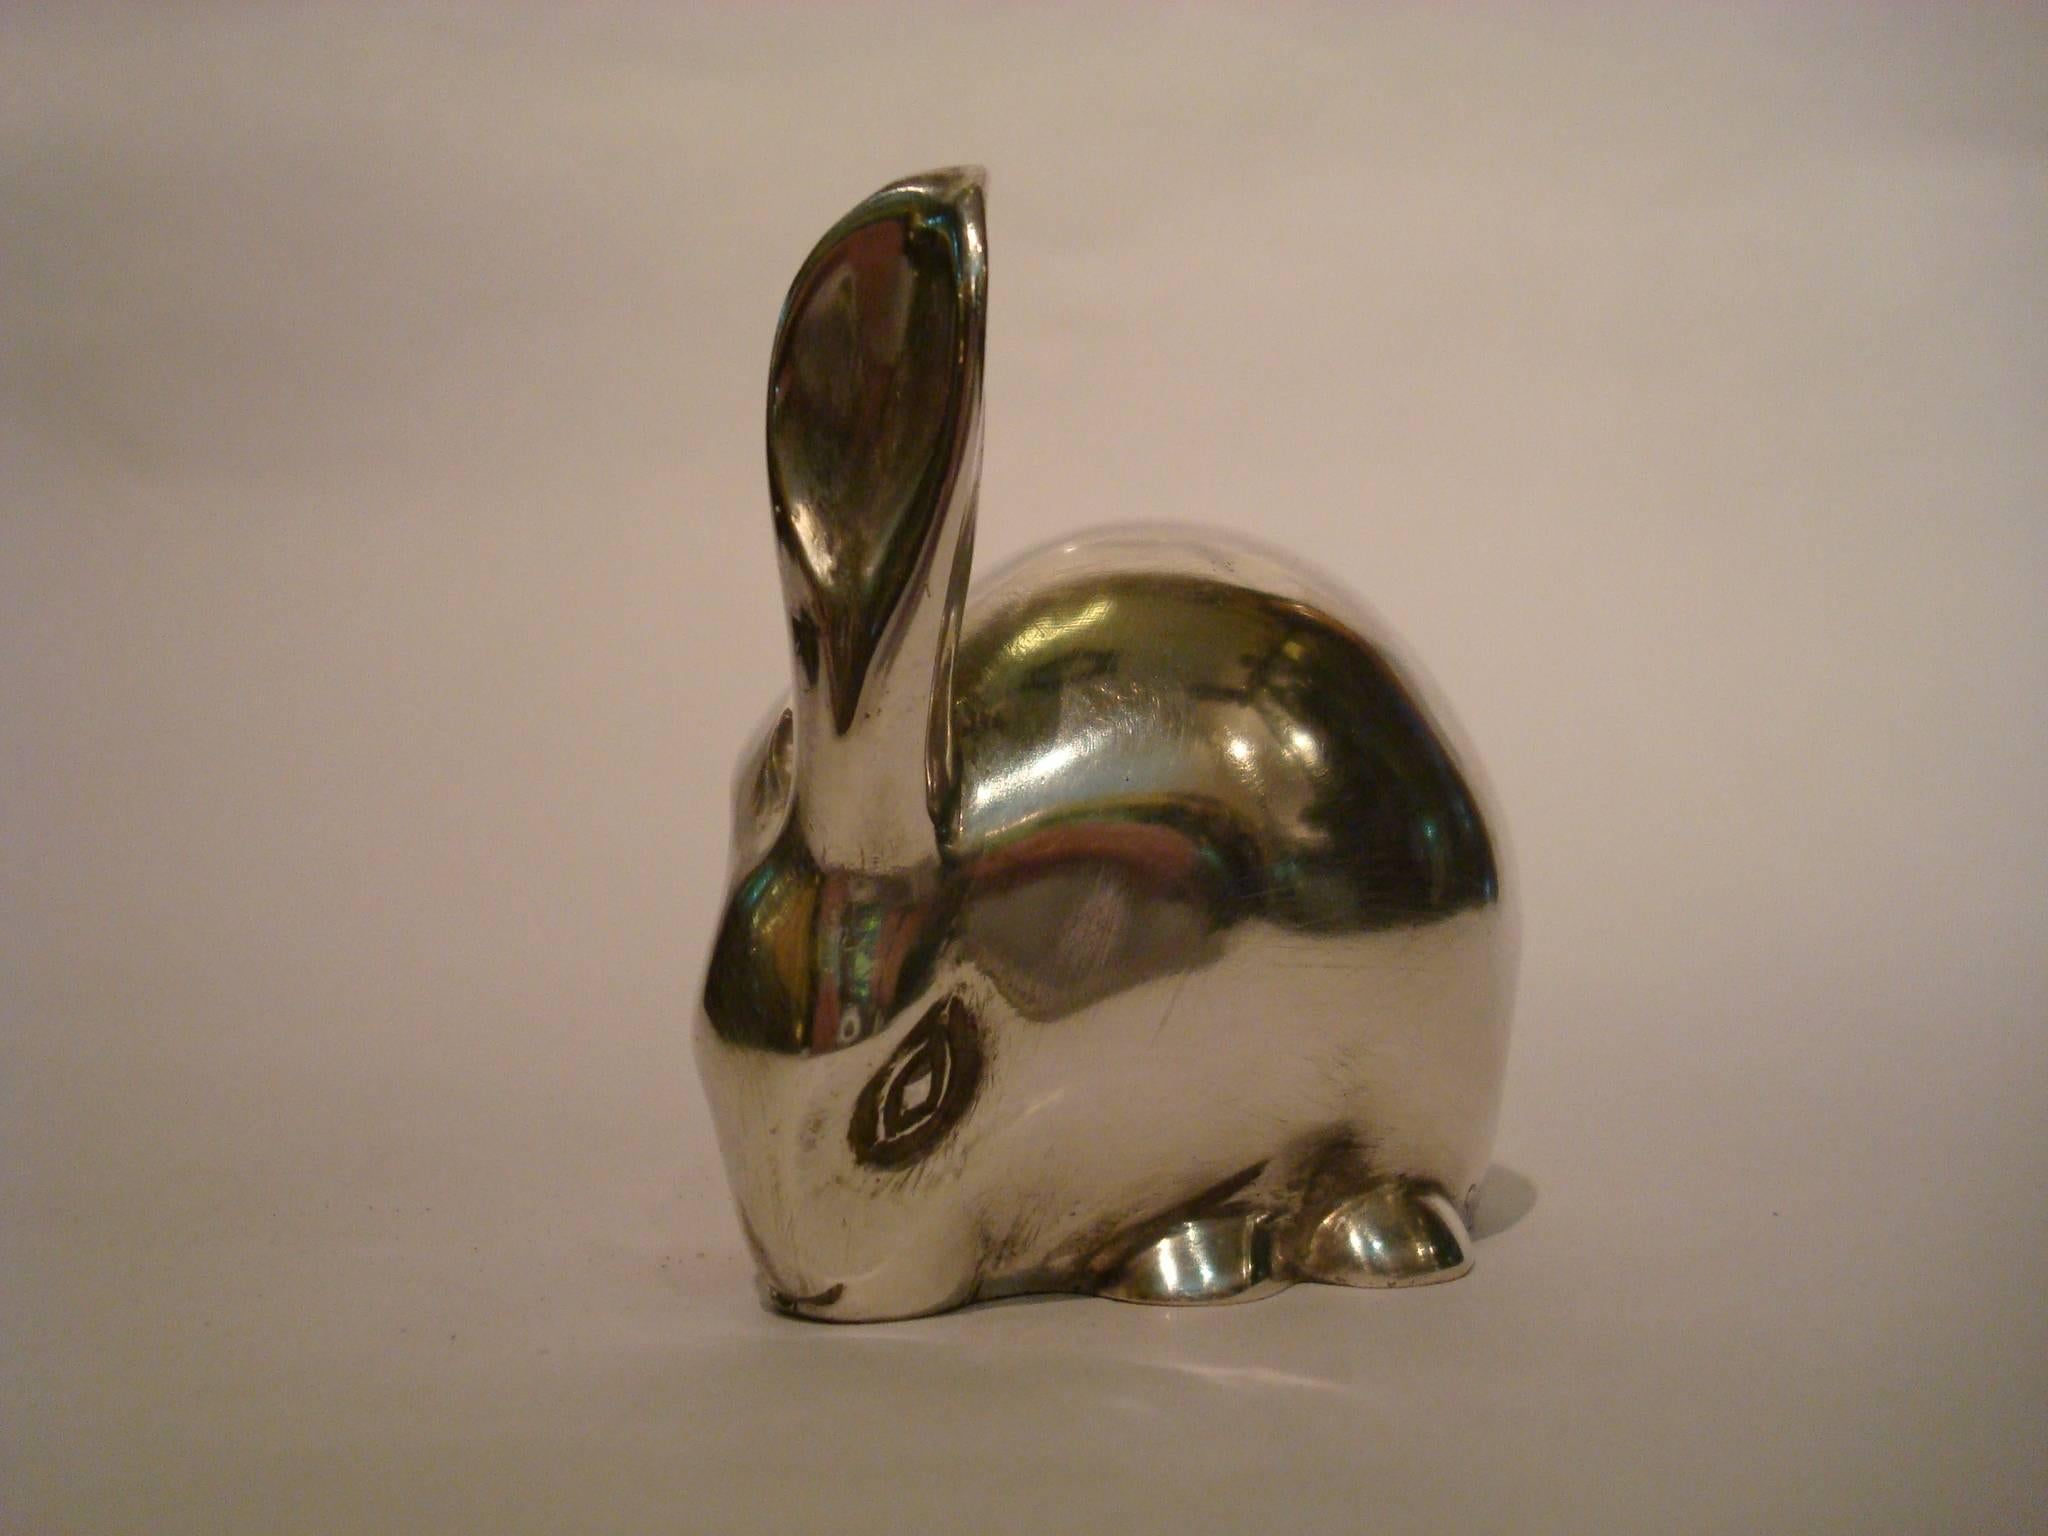 Art Deco versilberte Bronze-Skulptur eines Kaninchens Hase. Schöner Briefbeschwerer. Edouard Marcel Sandoz (1881-1973). Unterschrift/Marken: Ed.M. Sandoz - Susse Fre'res Ed.